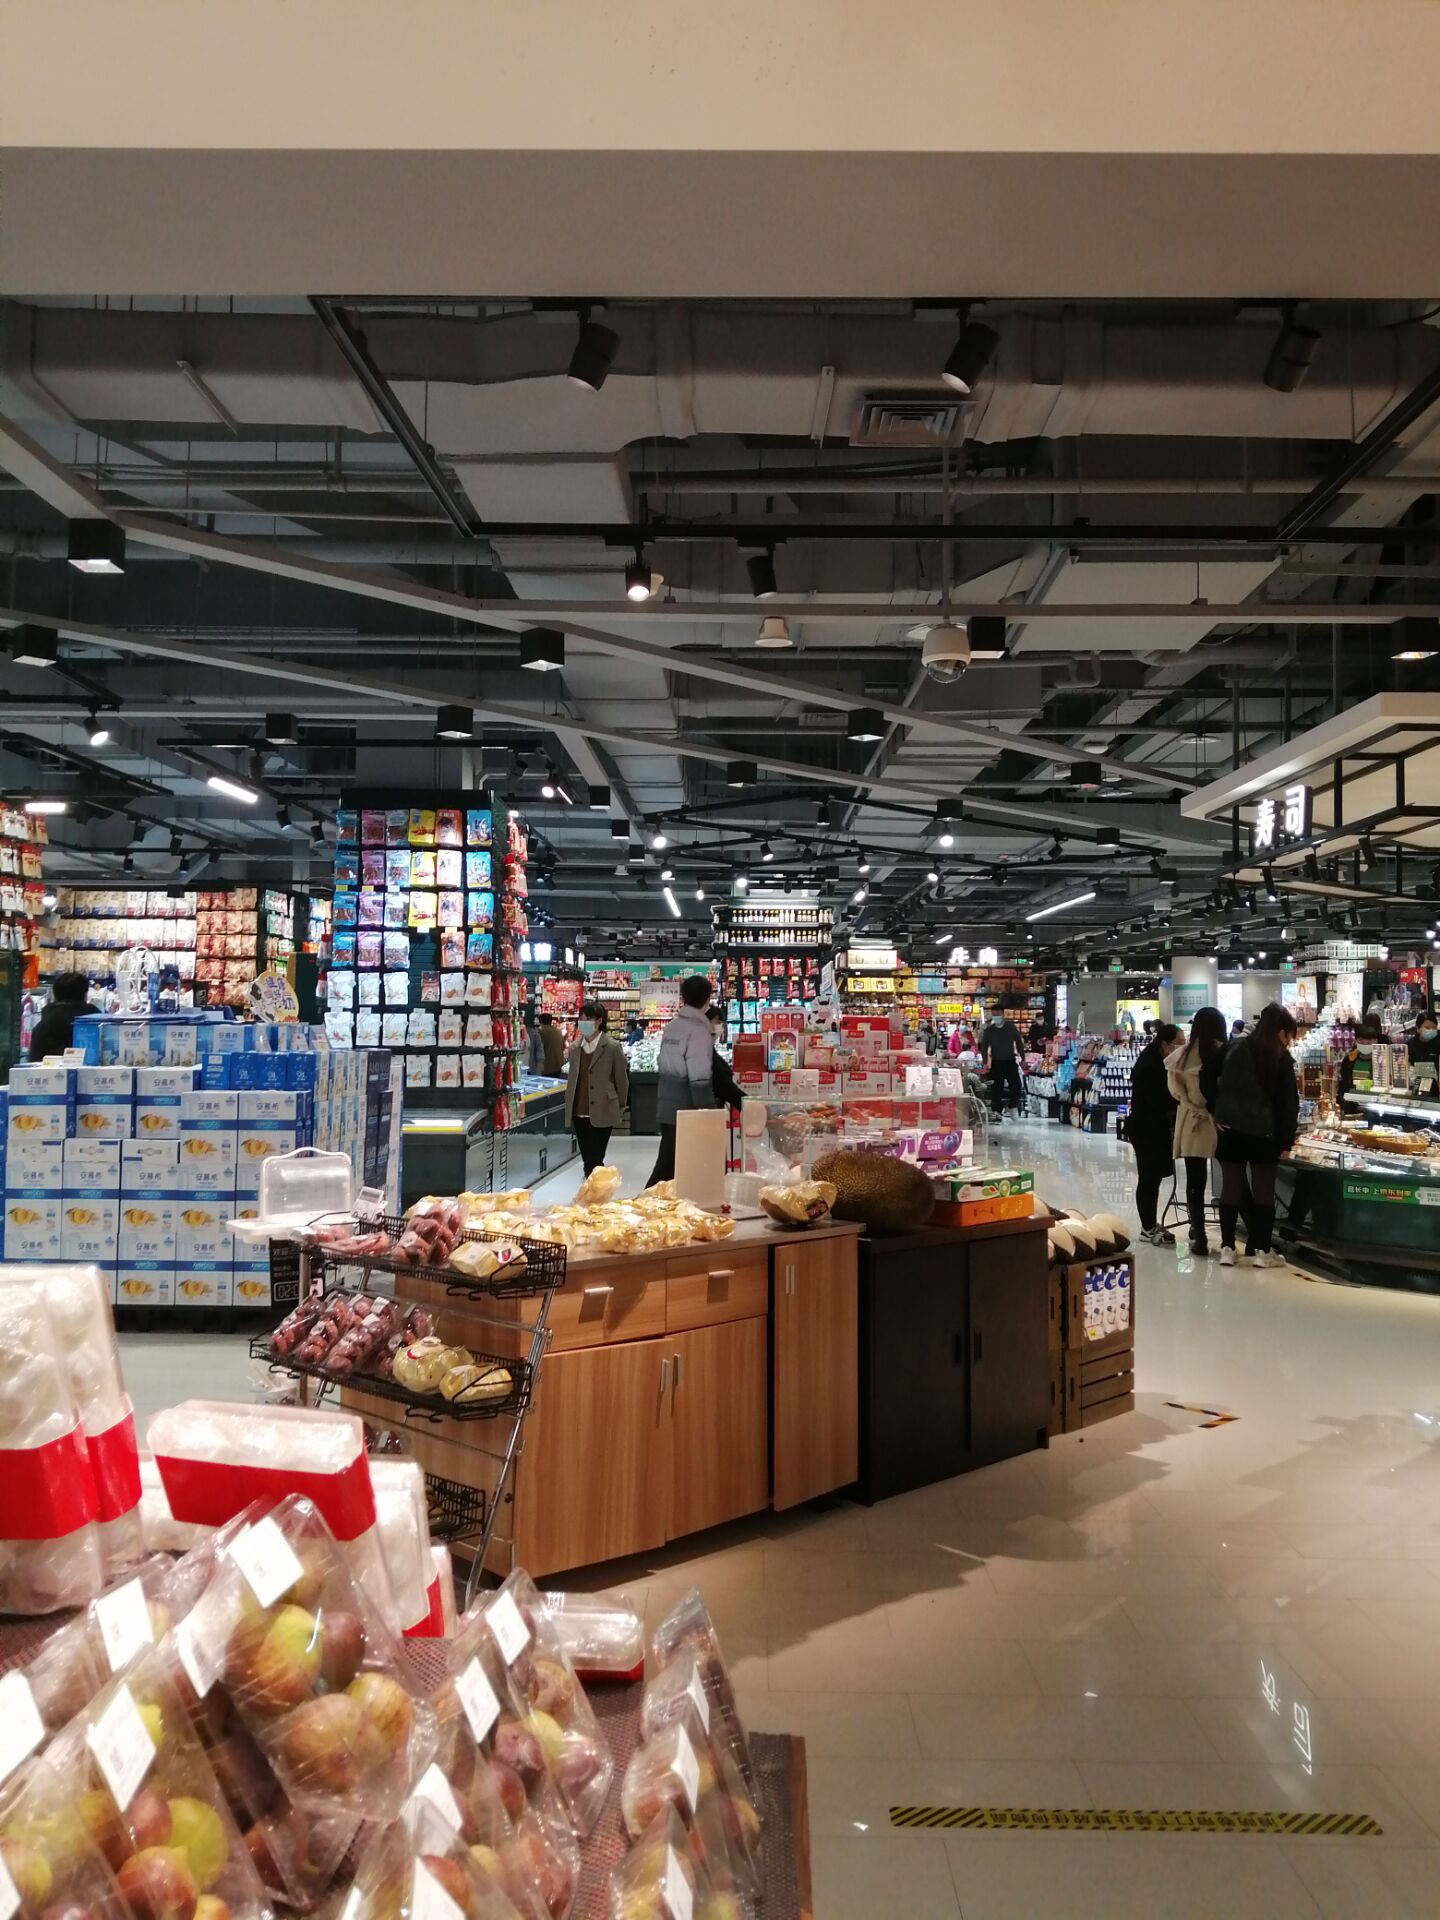 南京大型超市商场限塑渐入佳境 农贸市场限塑依旧困难重重